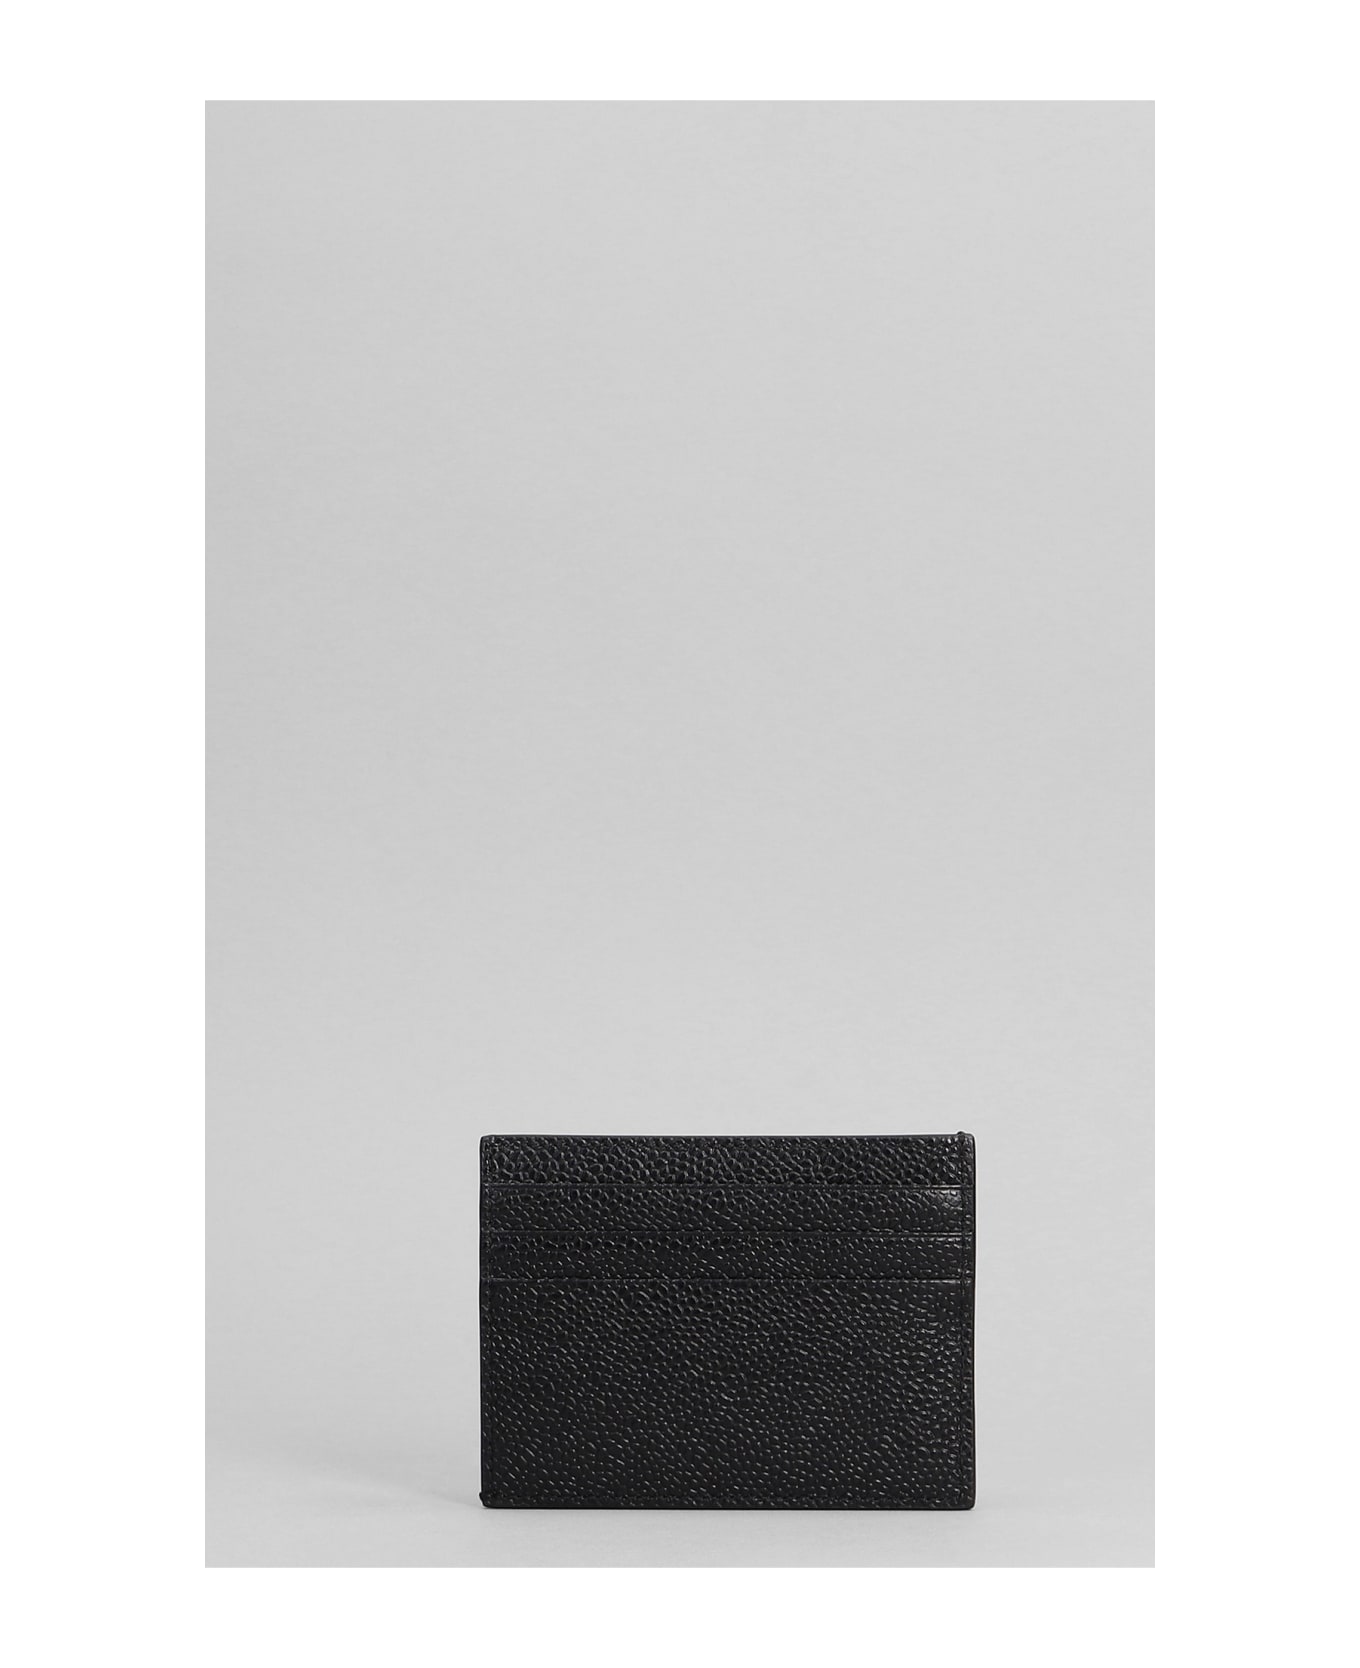 Thom Browne Wallet In Black Leather - black